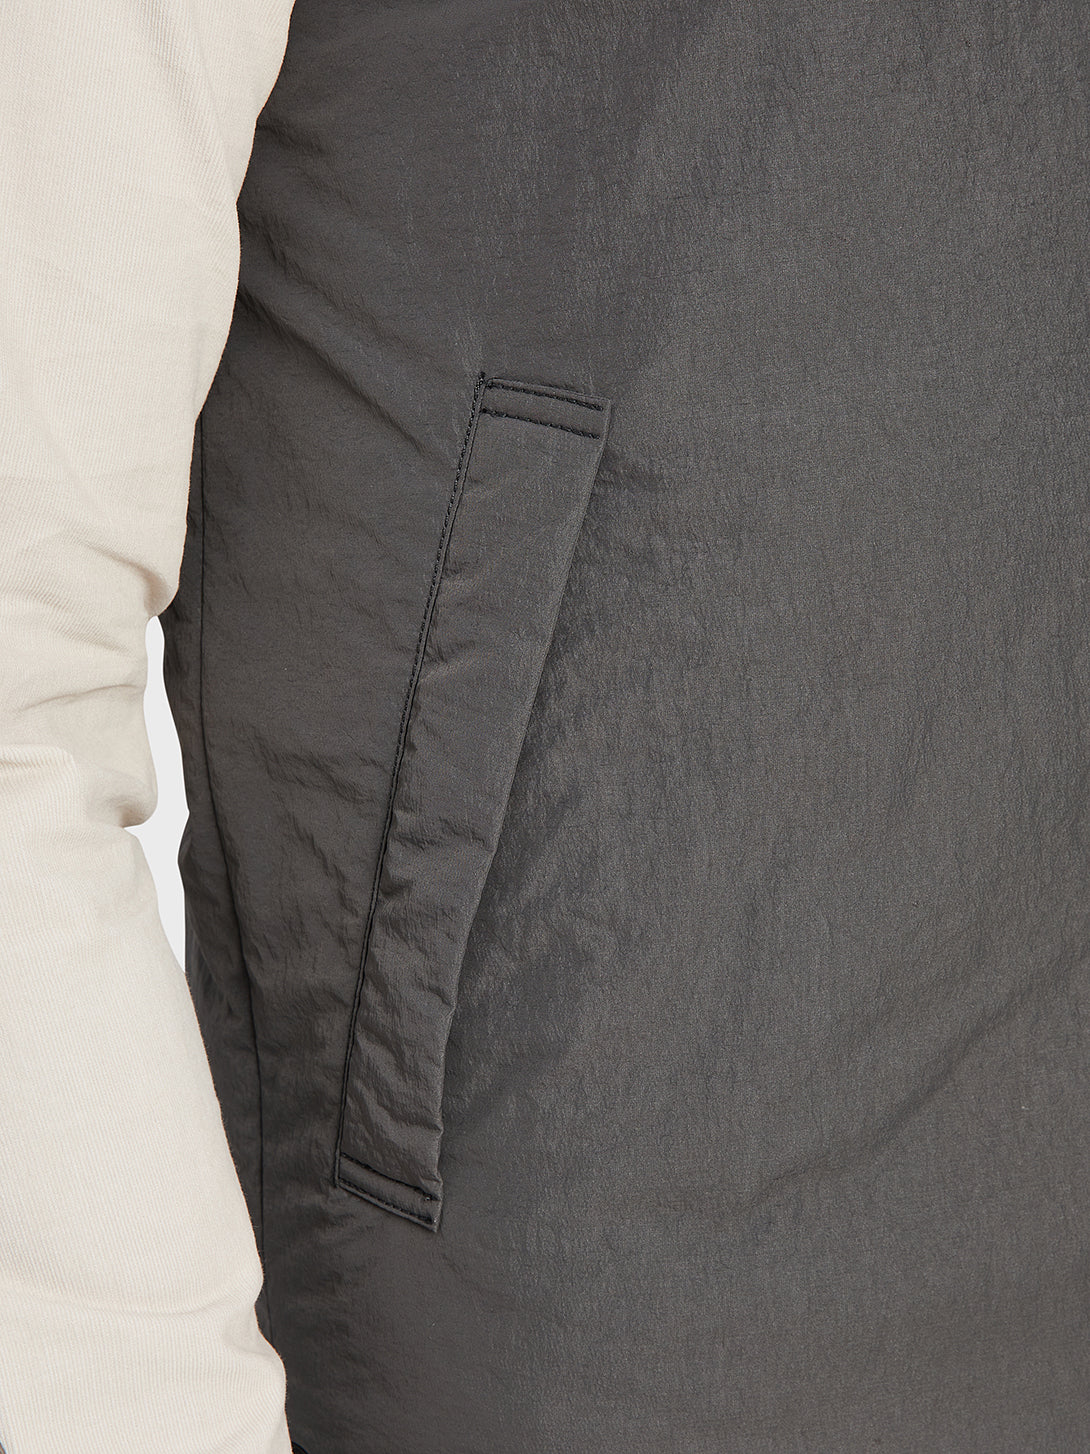 ONS Clothing Men's vest in DK GREY black friday deals